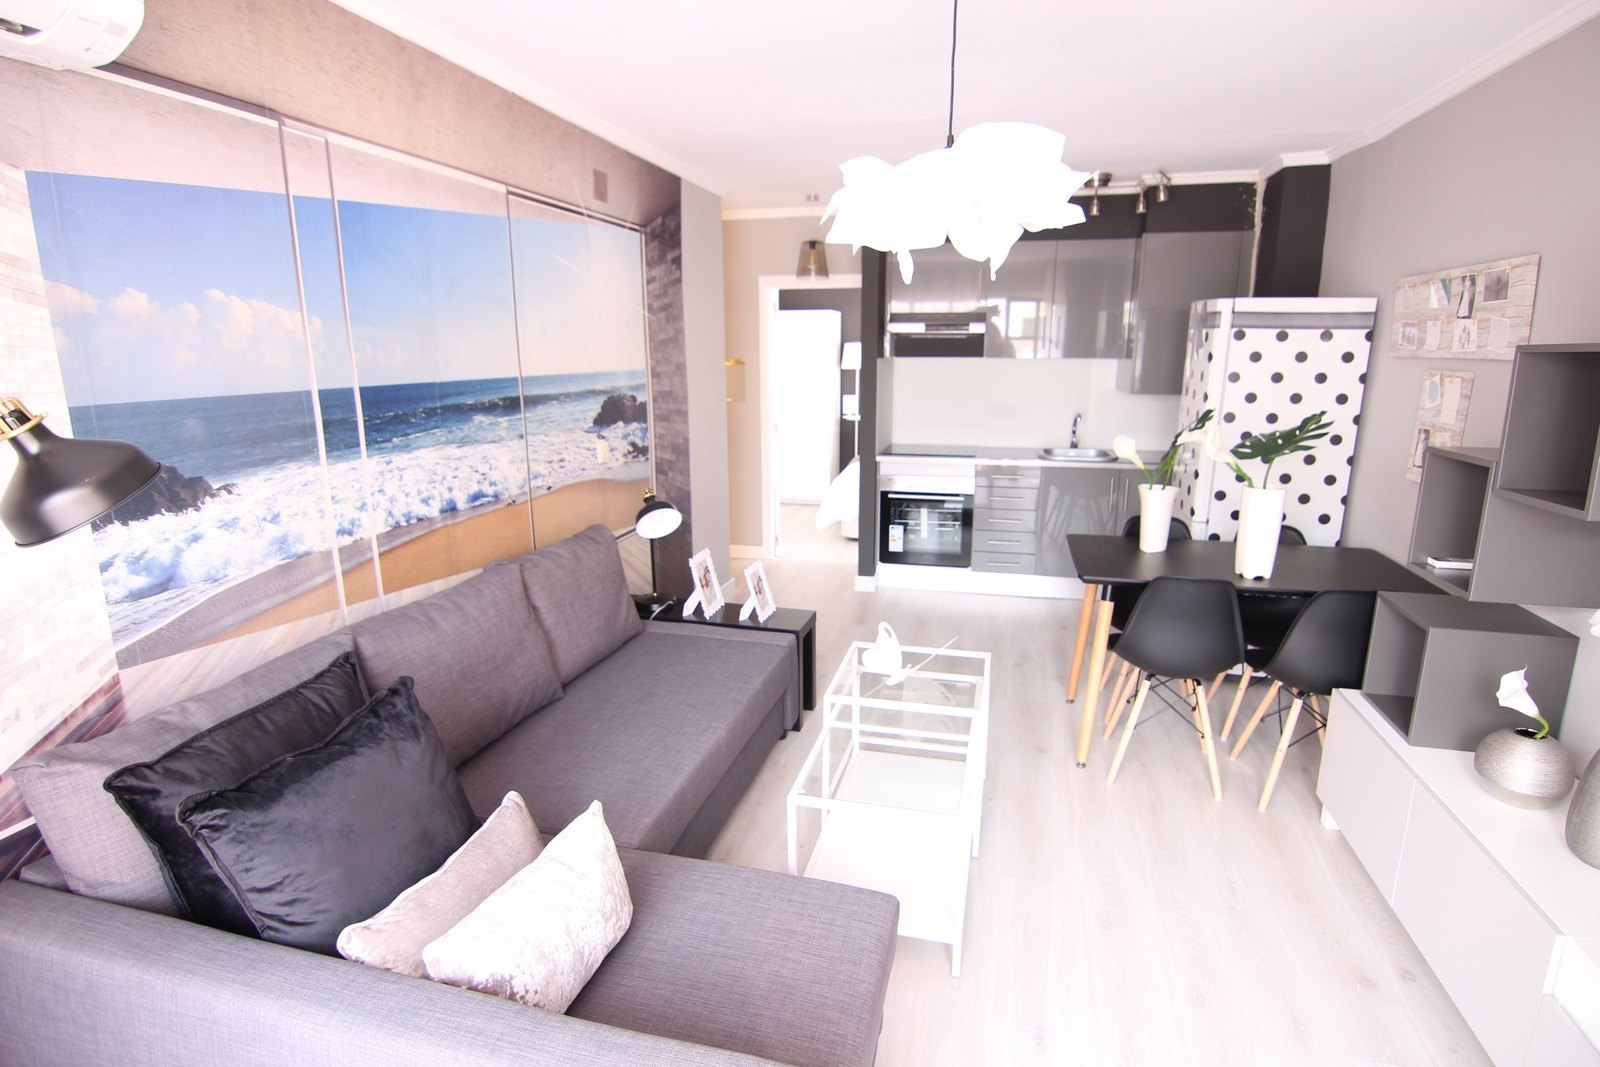 Wunderschönes total renoviertes Penthouse zum Verkauf in Moraira mit einer grossen Terrasse und herrlicher Meersicht.